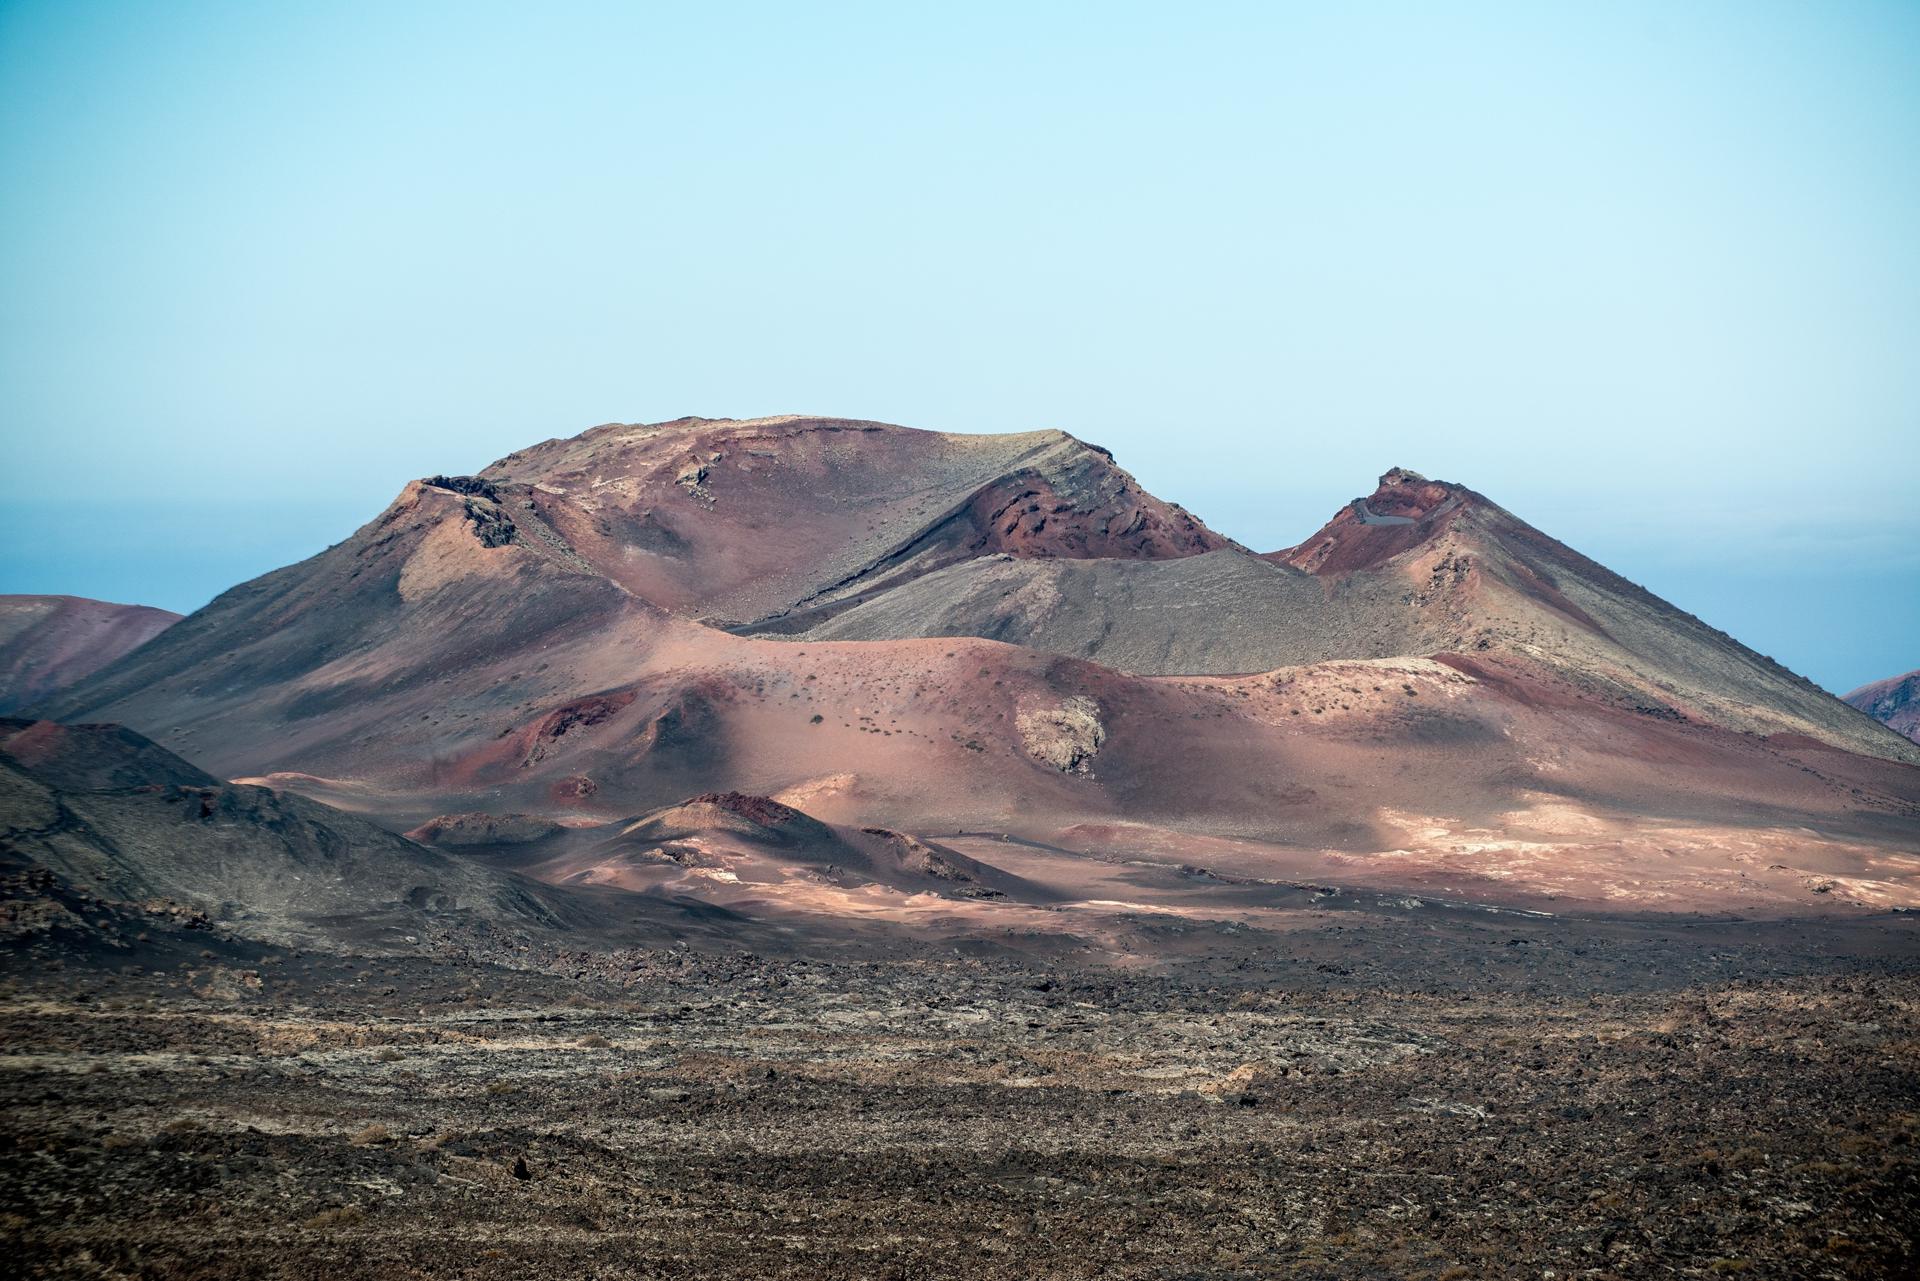 Foto de archivo de volcanes en el interior del Parque Nacional de Timanfaya, en Lanzarote. EFE/Javier Fuentes